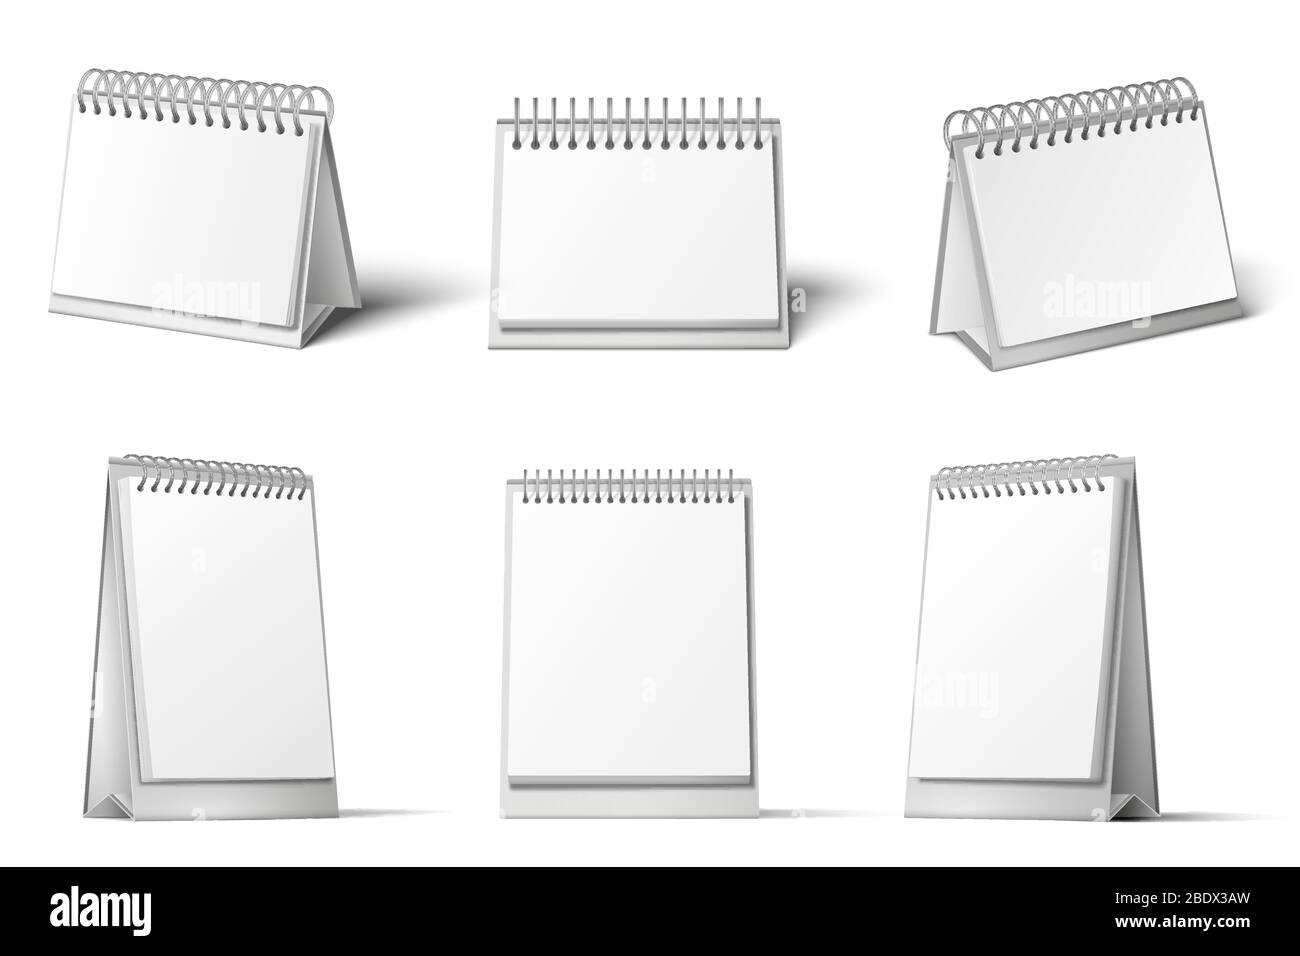 Tischkalender Modell. Leerer Kalender Ständer, Tabelle Tagebuch Erinnerung und realistische 3D weiße Vorlage Vektor-Set Stock Vektor